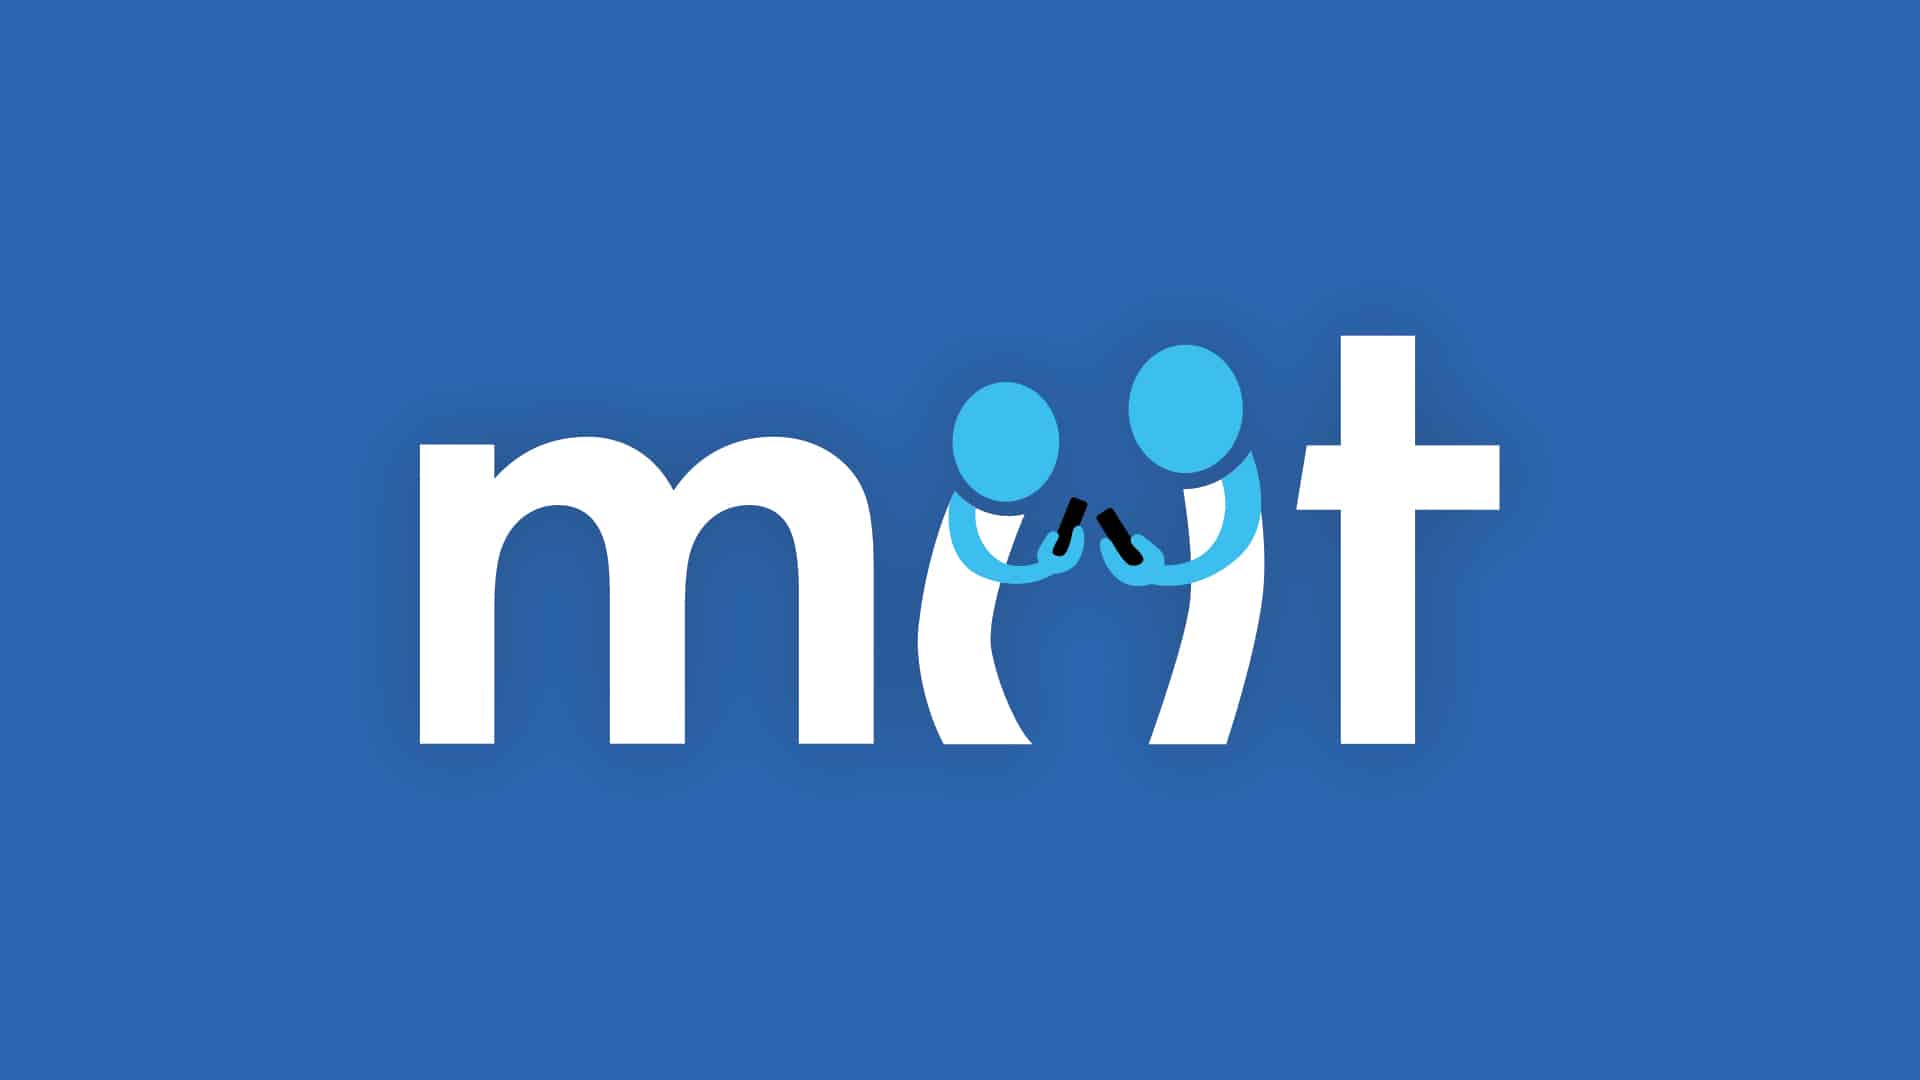 Miit Branding & App Design